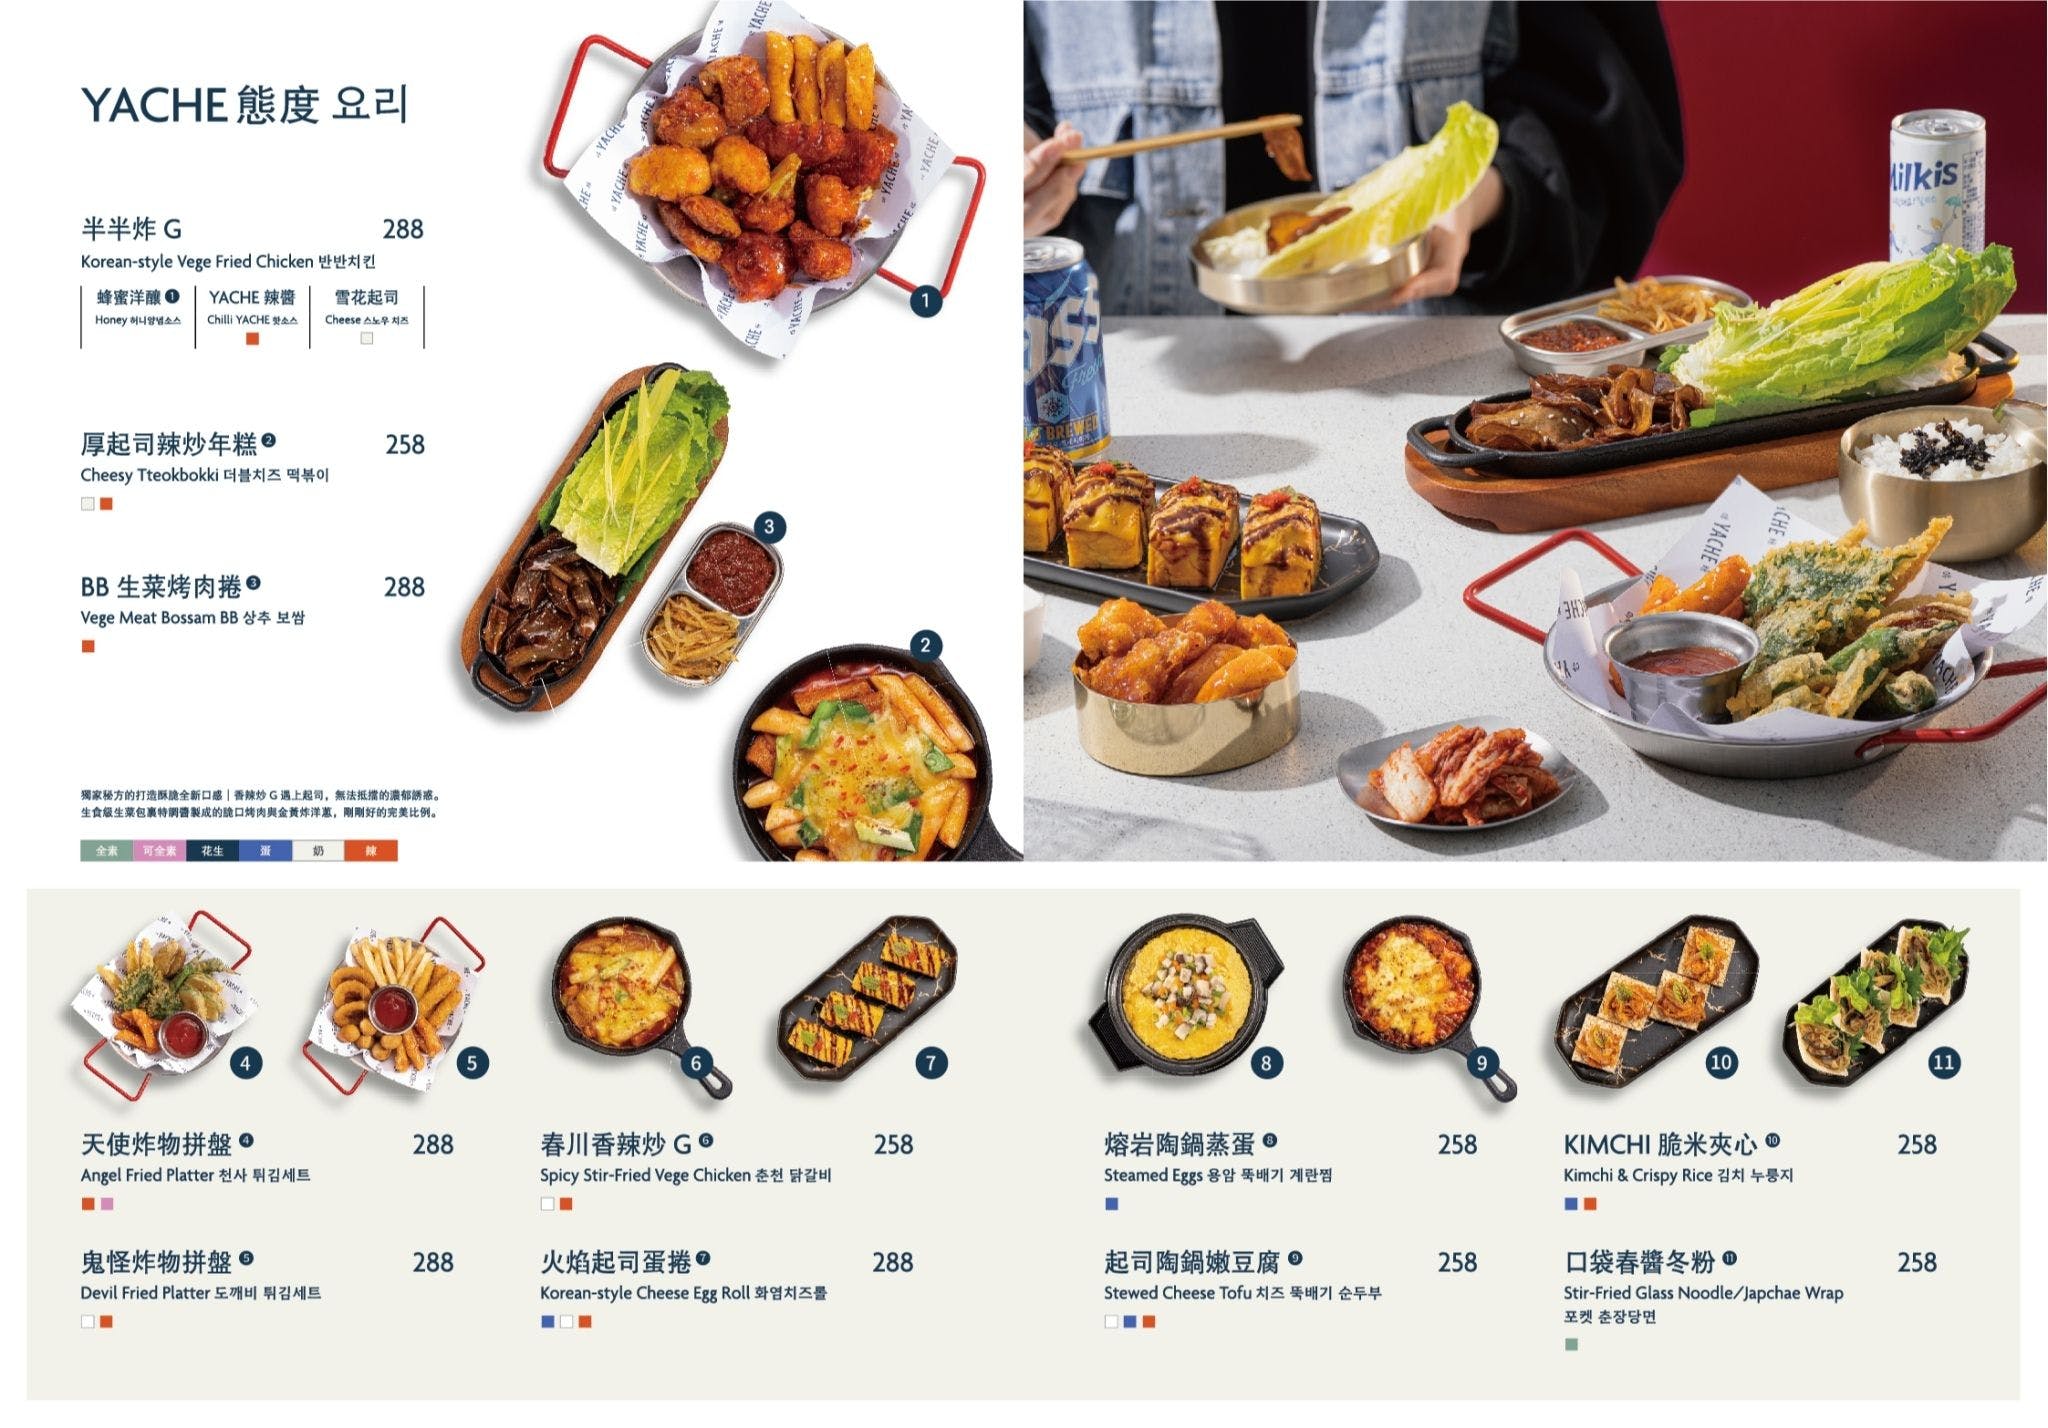 韓式蔬食專賣店，養心茶樓新品牌，沒看錯，全部韓式料理都是素的！韓國必吃半半炸G超仿真